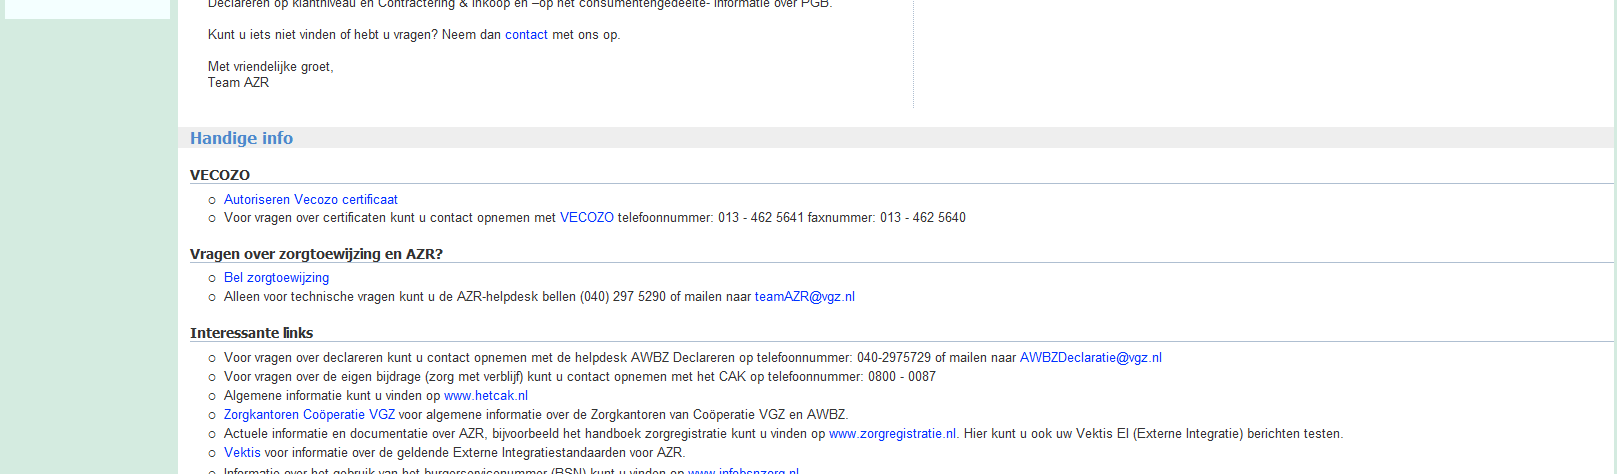 1. Homepagina Om op de AZR-site te kunnen inloggen, dient u te beschikken over een geldig VECOZO certificaat. Dit certificaat dient u te installeren op uw pc.